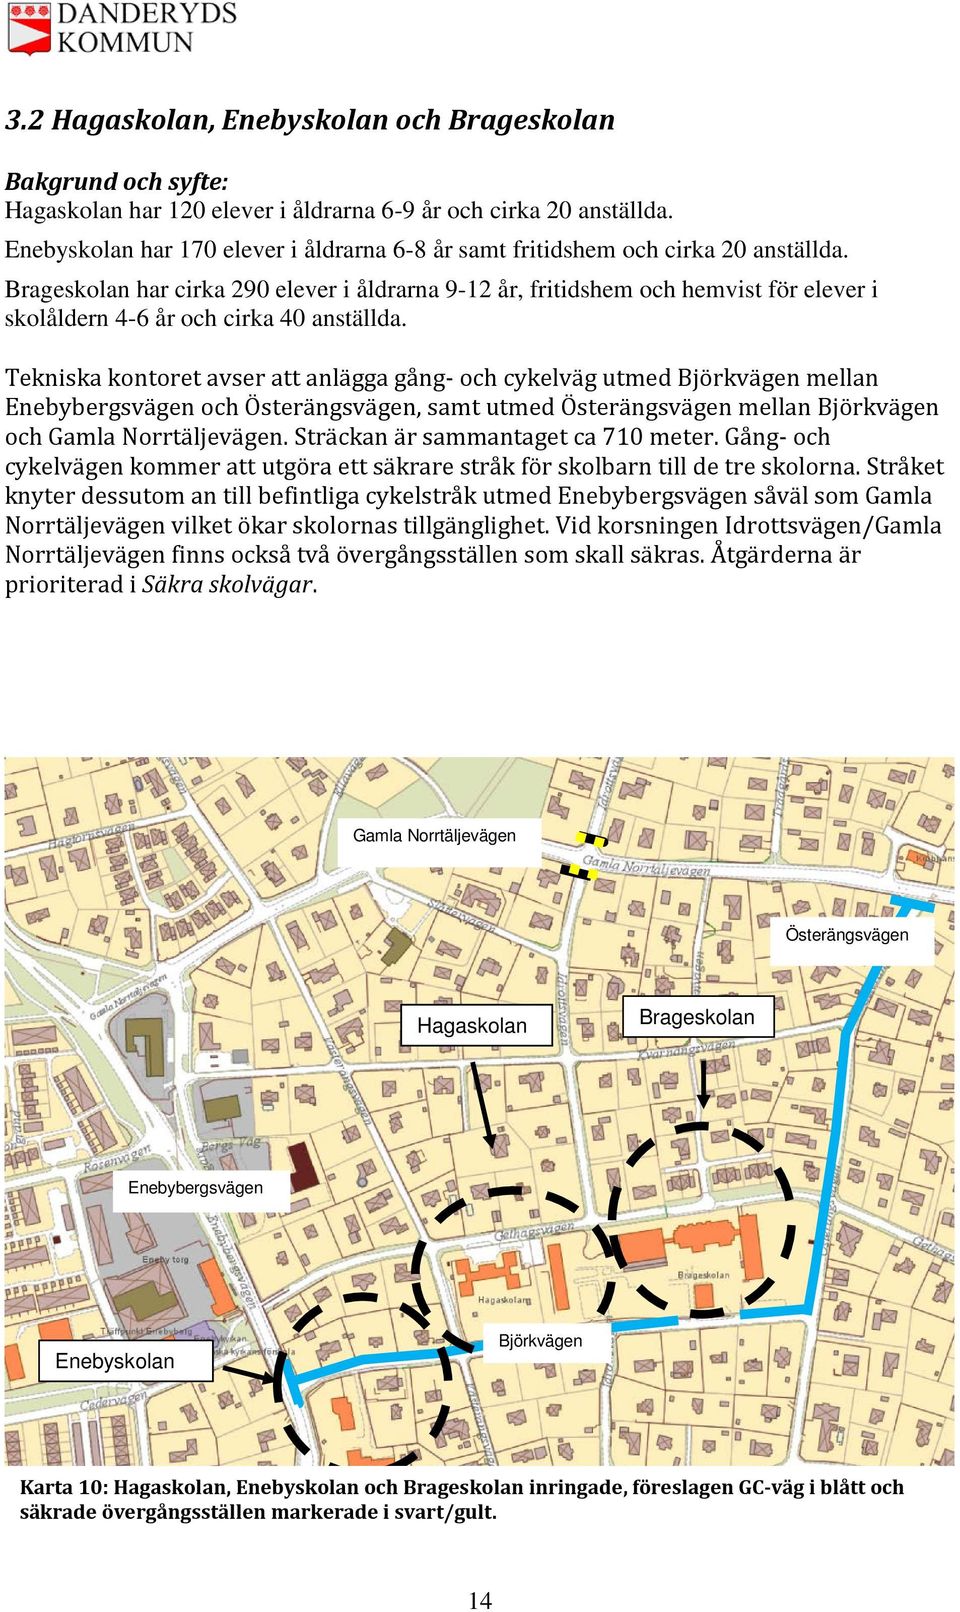 Tekniska kontoret avser att anlägga gång- och cykelväg utmed Björkvägen mellan Enebybergsvägen och Österängsvägen, samt utmed Österängsvägen mellan Björkvägen och Gamla Norrtäljevägen.